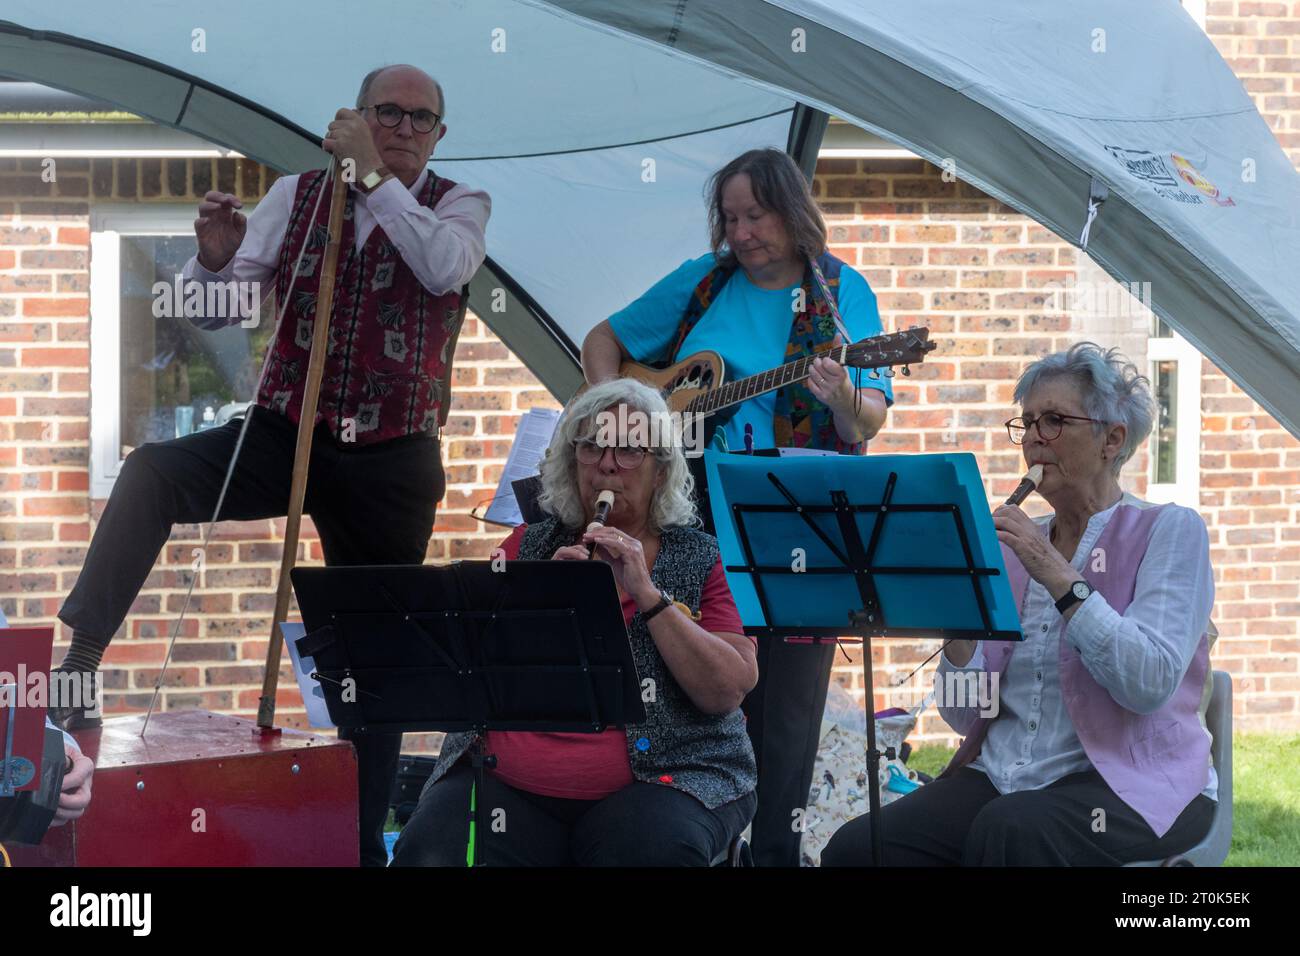 Four Marks Folk Band divertissant les gens lors d'un événement Hampshire, Angleterre, Royaume-Uni. Spectacle de musique live en plein air, musiciens jouant de la flûte à bec, guitare Banque D'Images